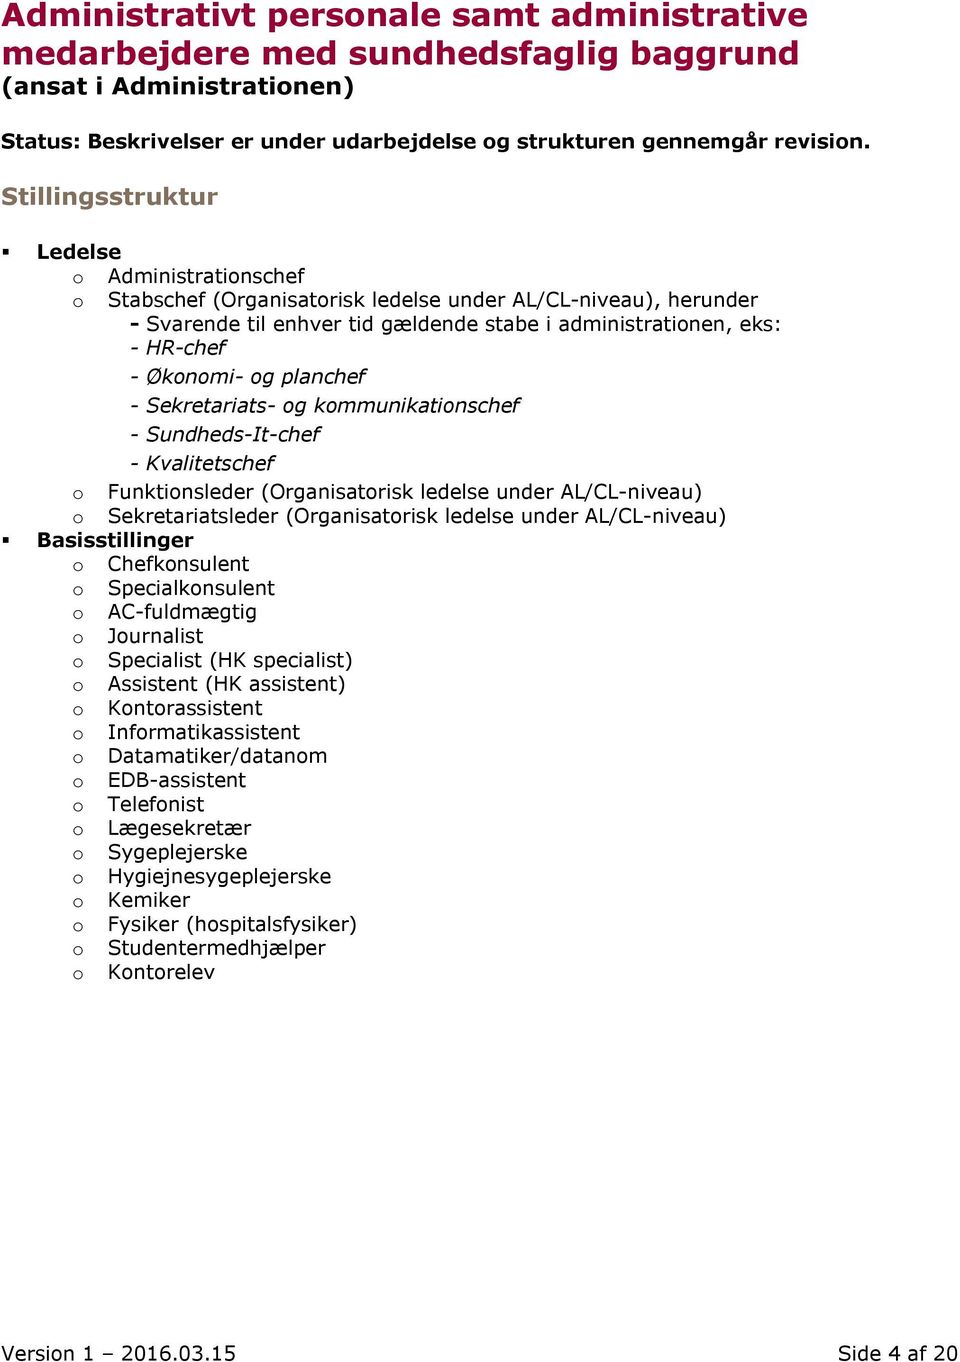 Oversigt - stillings- og funktionsstrukturer - PDF Gratis download